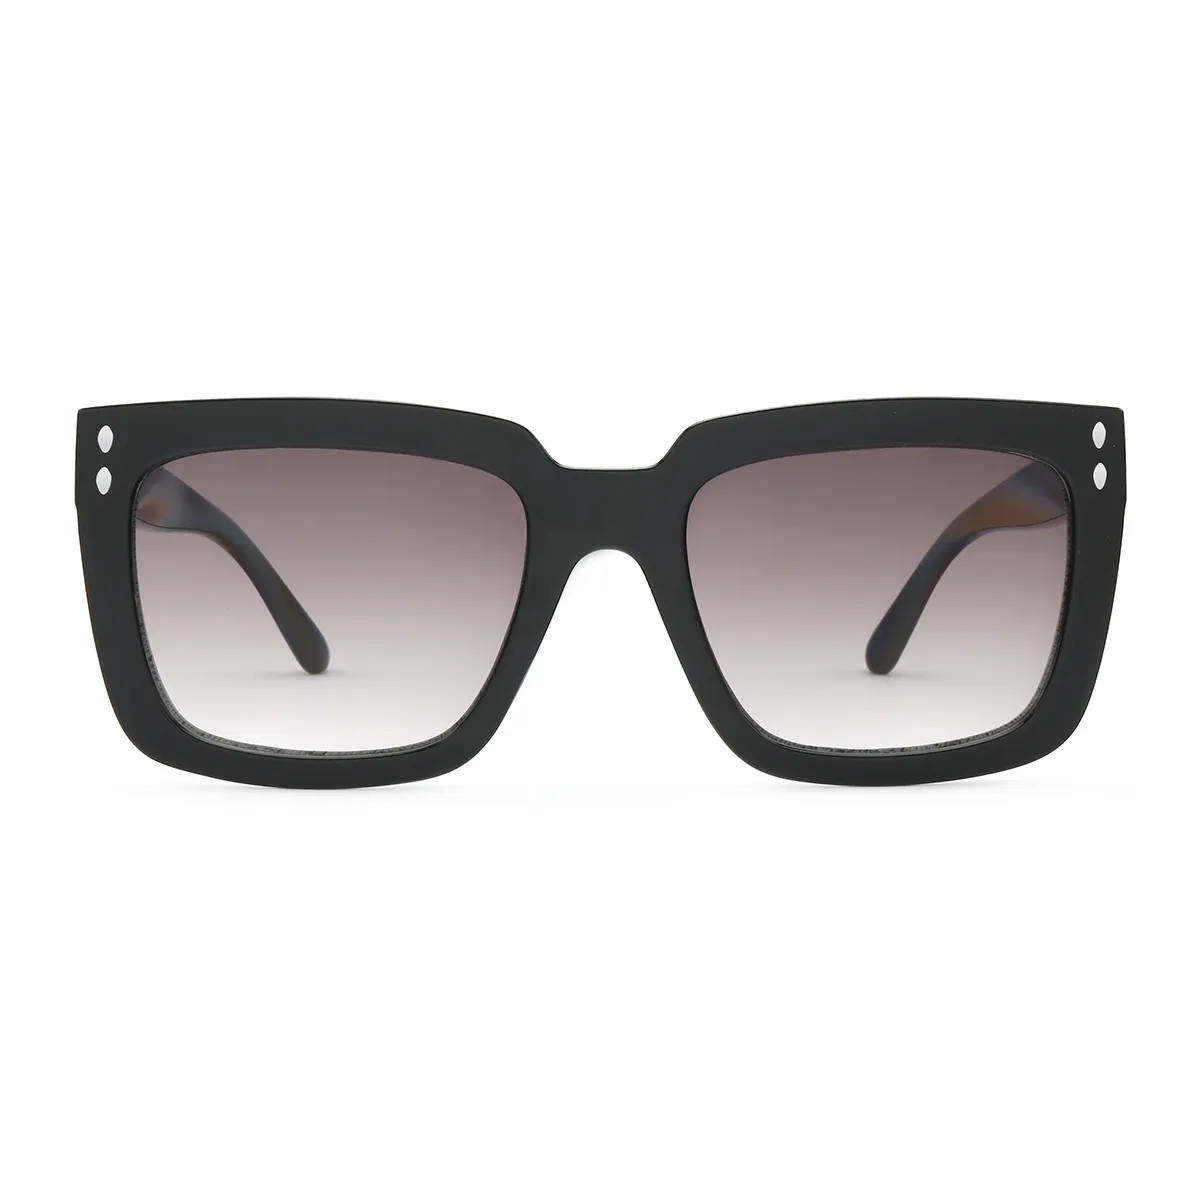 Deirdre - Square Black Sunglasses for Men & Women